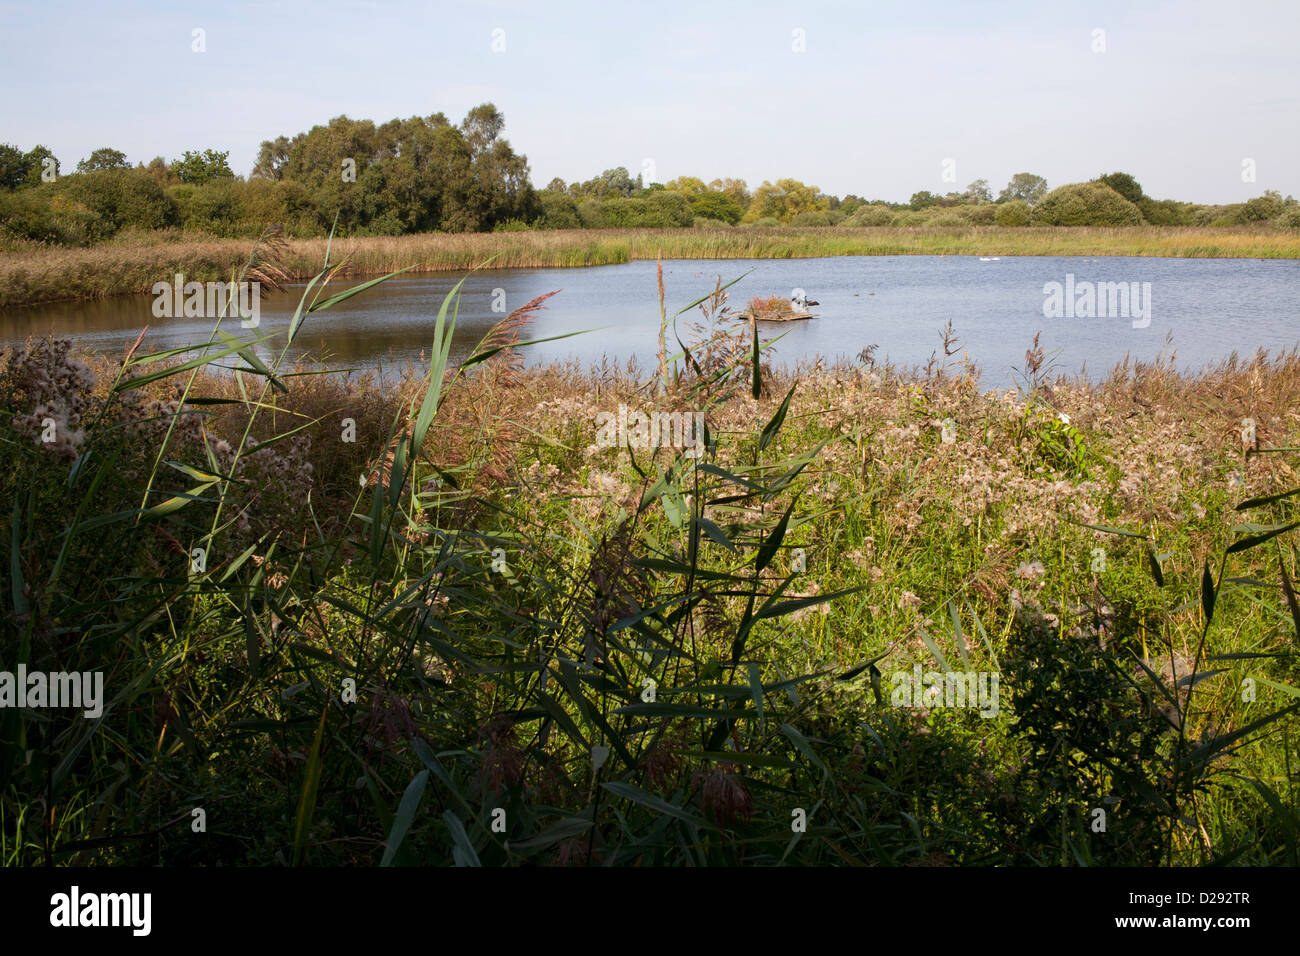 Piscine sur une réserve naturelle des zones humides. Woodwalton Fen NNR. Cambridgeshire, Angleterre. Septembre. Banque D'Images